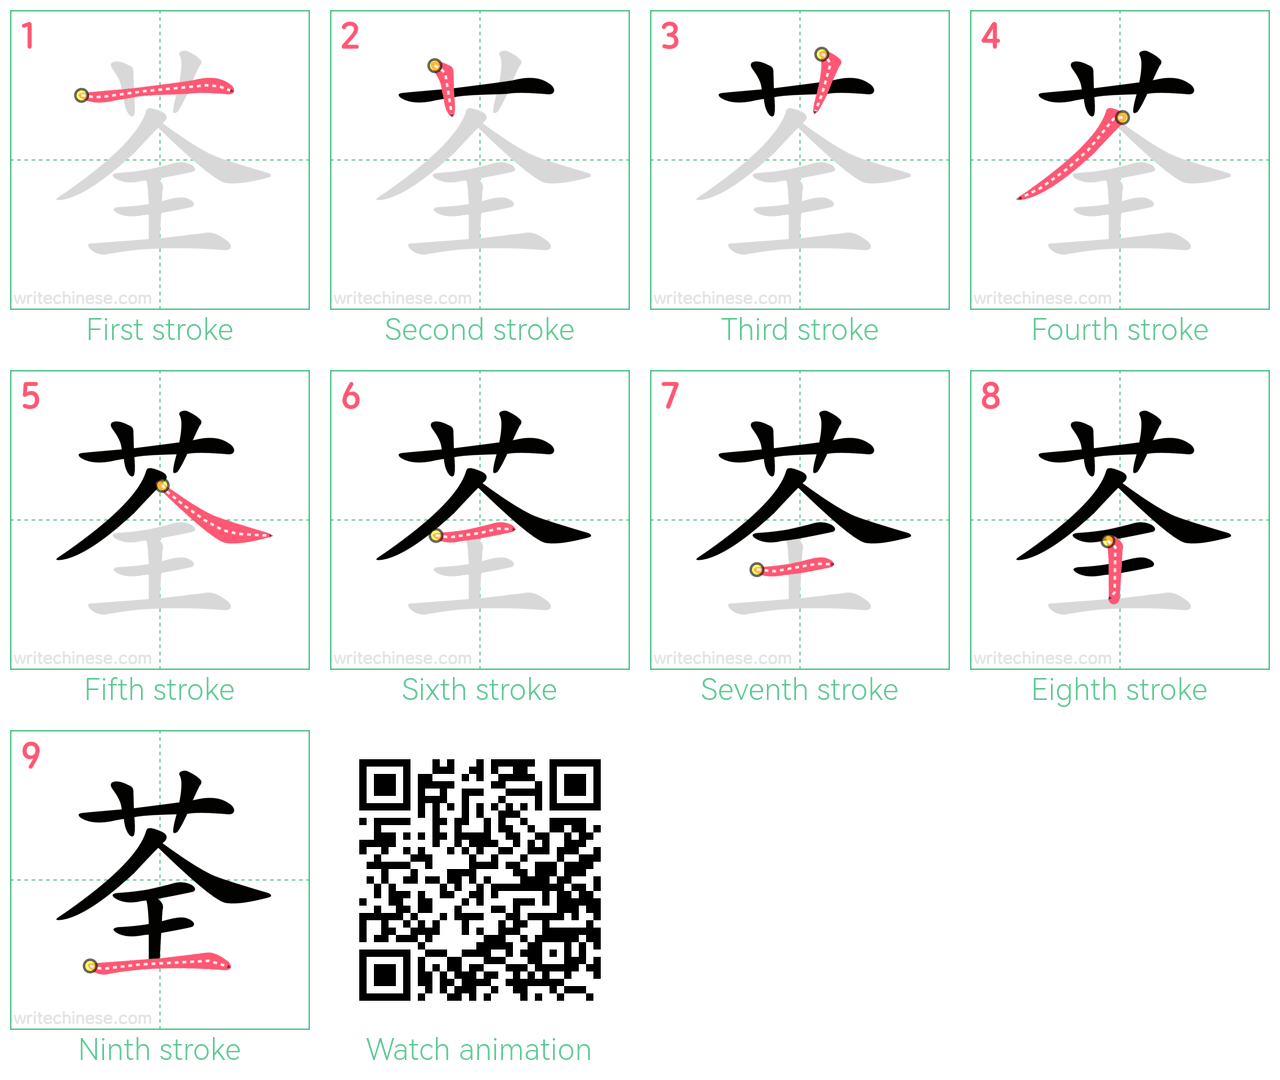 荃 step-by-step stroke order diagrams